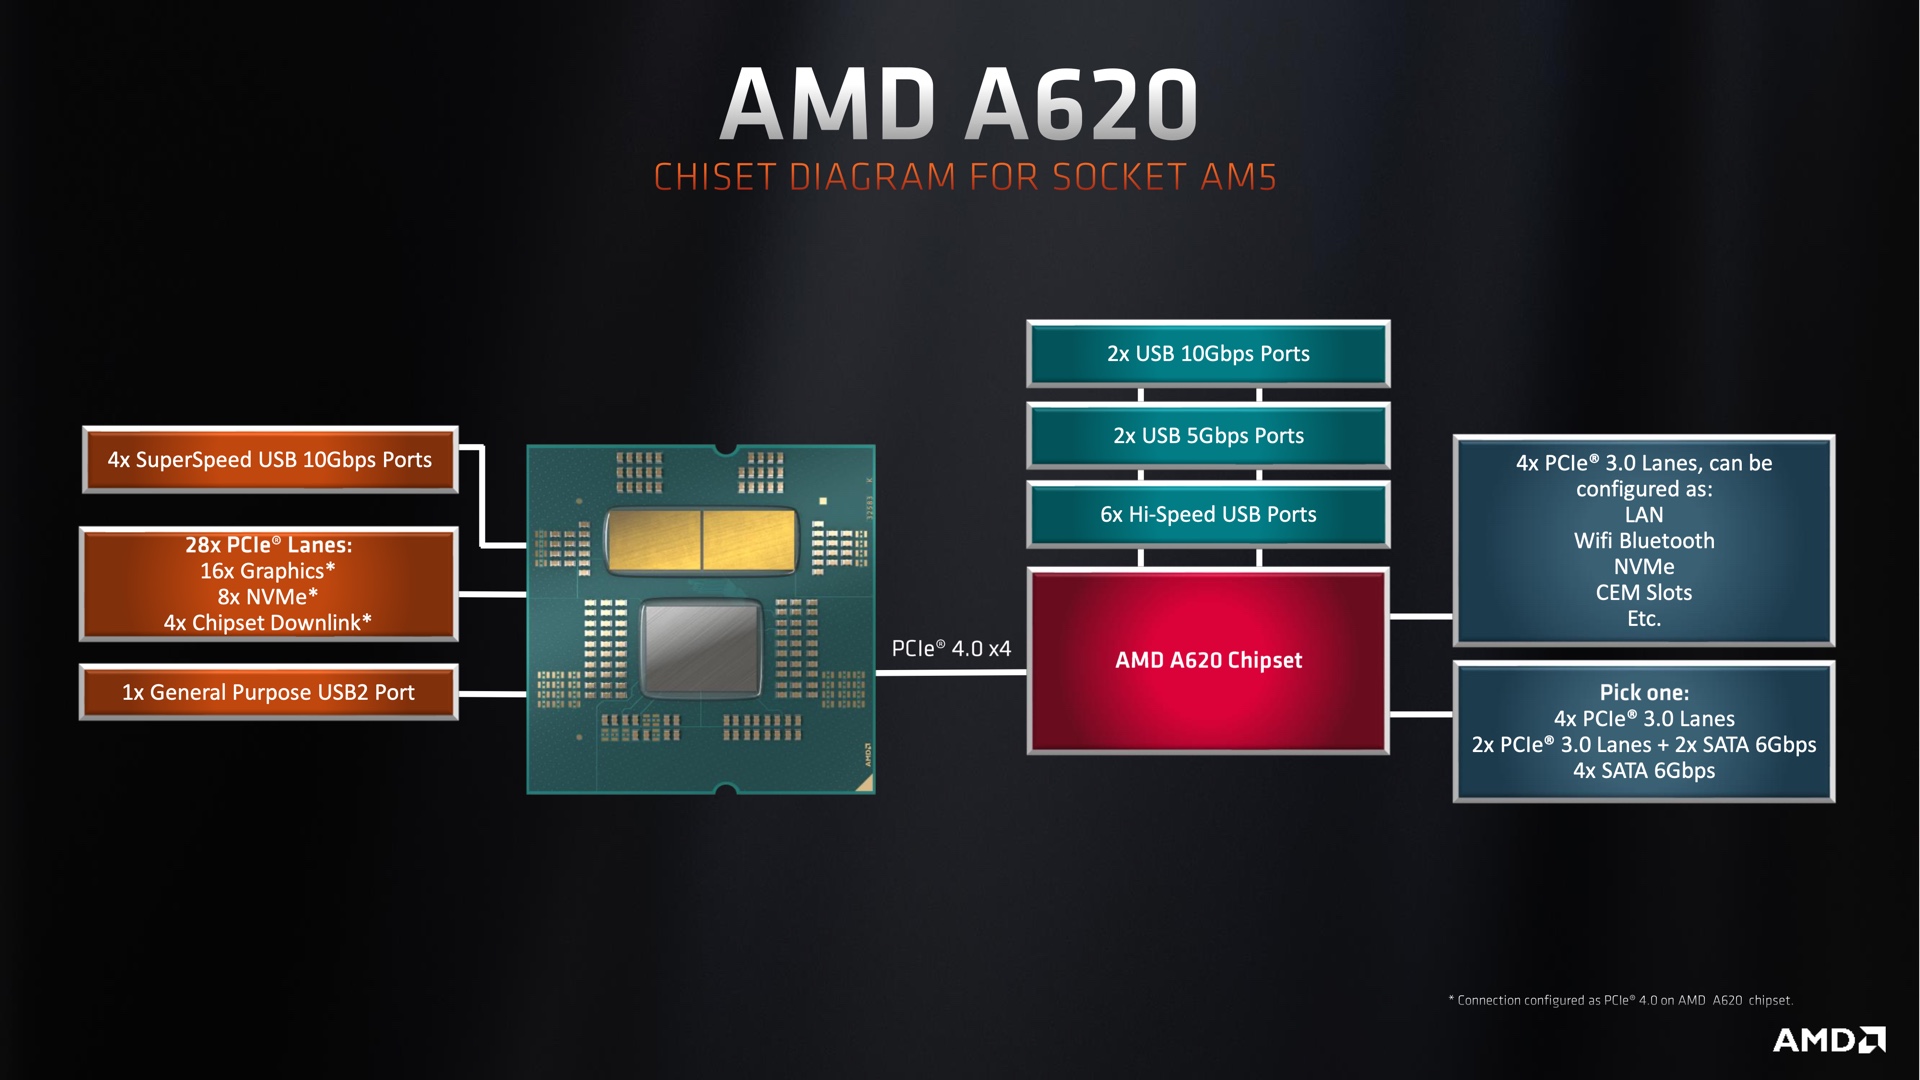 Les chipsets A620 ont des options de port USB moins (et plus lents) et utilisent des vitesses PCI 3.0 pour toutes les emplacements de stockage M.2 supplémentaires. Un seul emplacement SSD PCIE 4.0 et un emplacement GPU PCIE 4.0 sont toujours pris en charge grâce au CPU